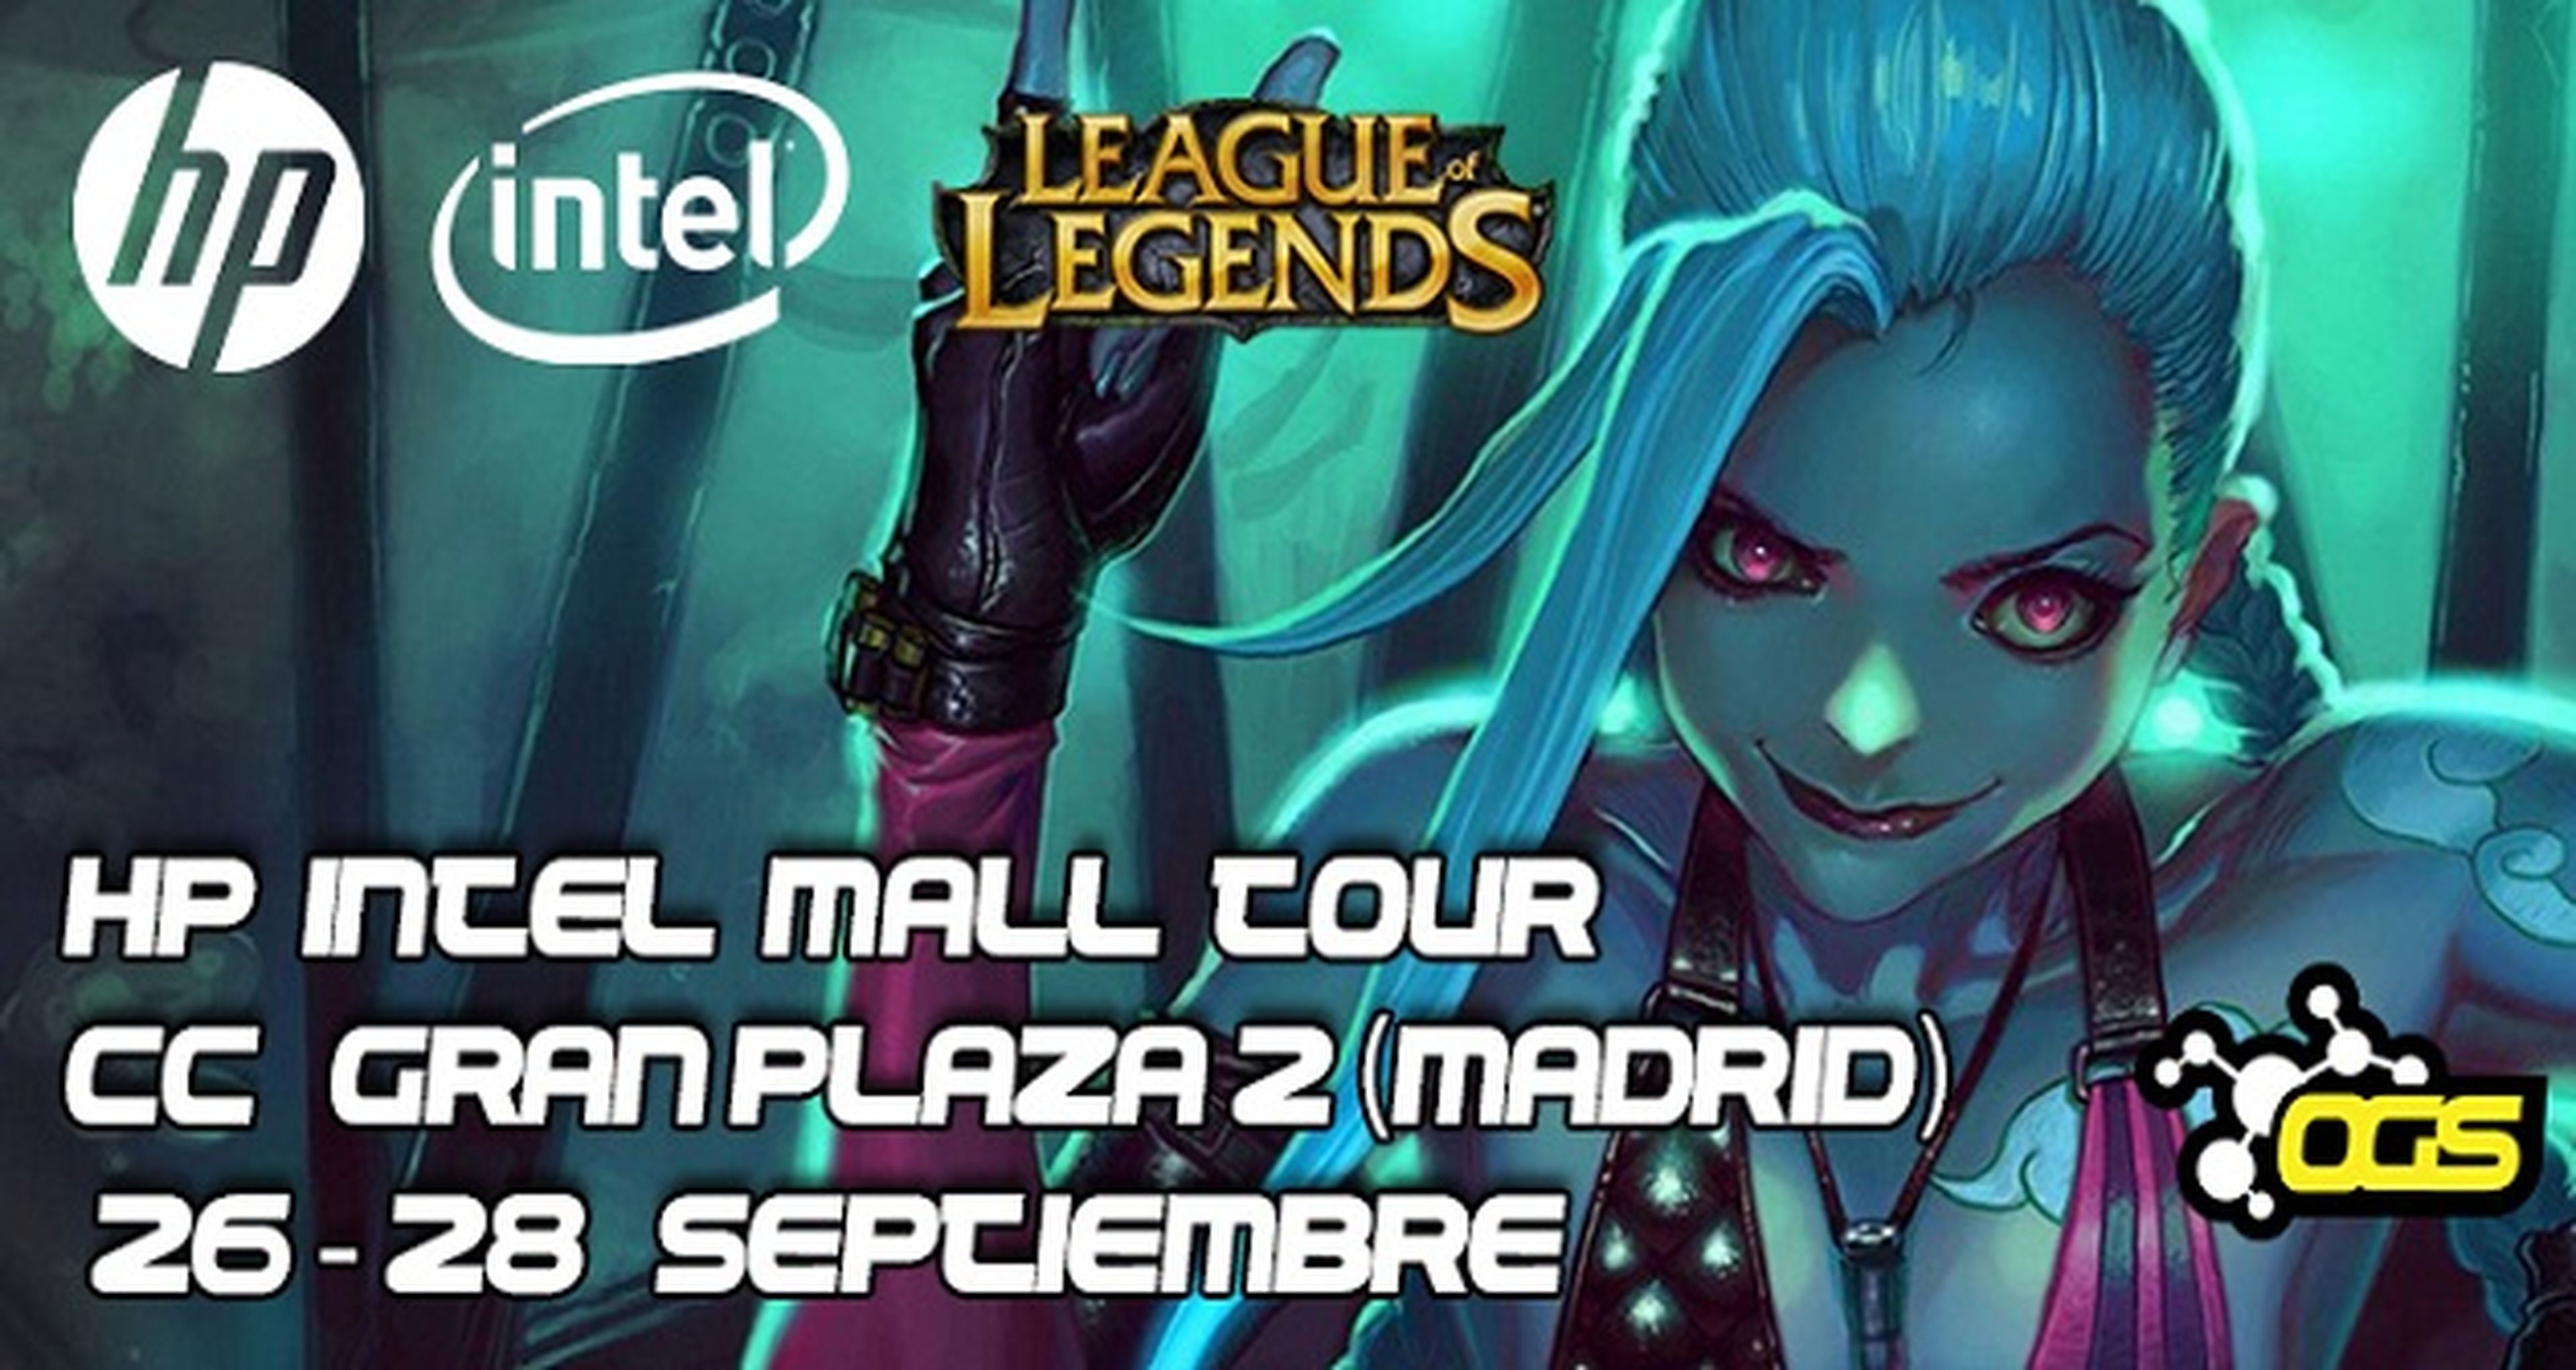 HP Intel Mall Tour regresa a Madrid